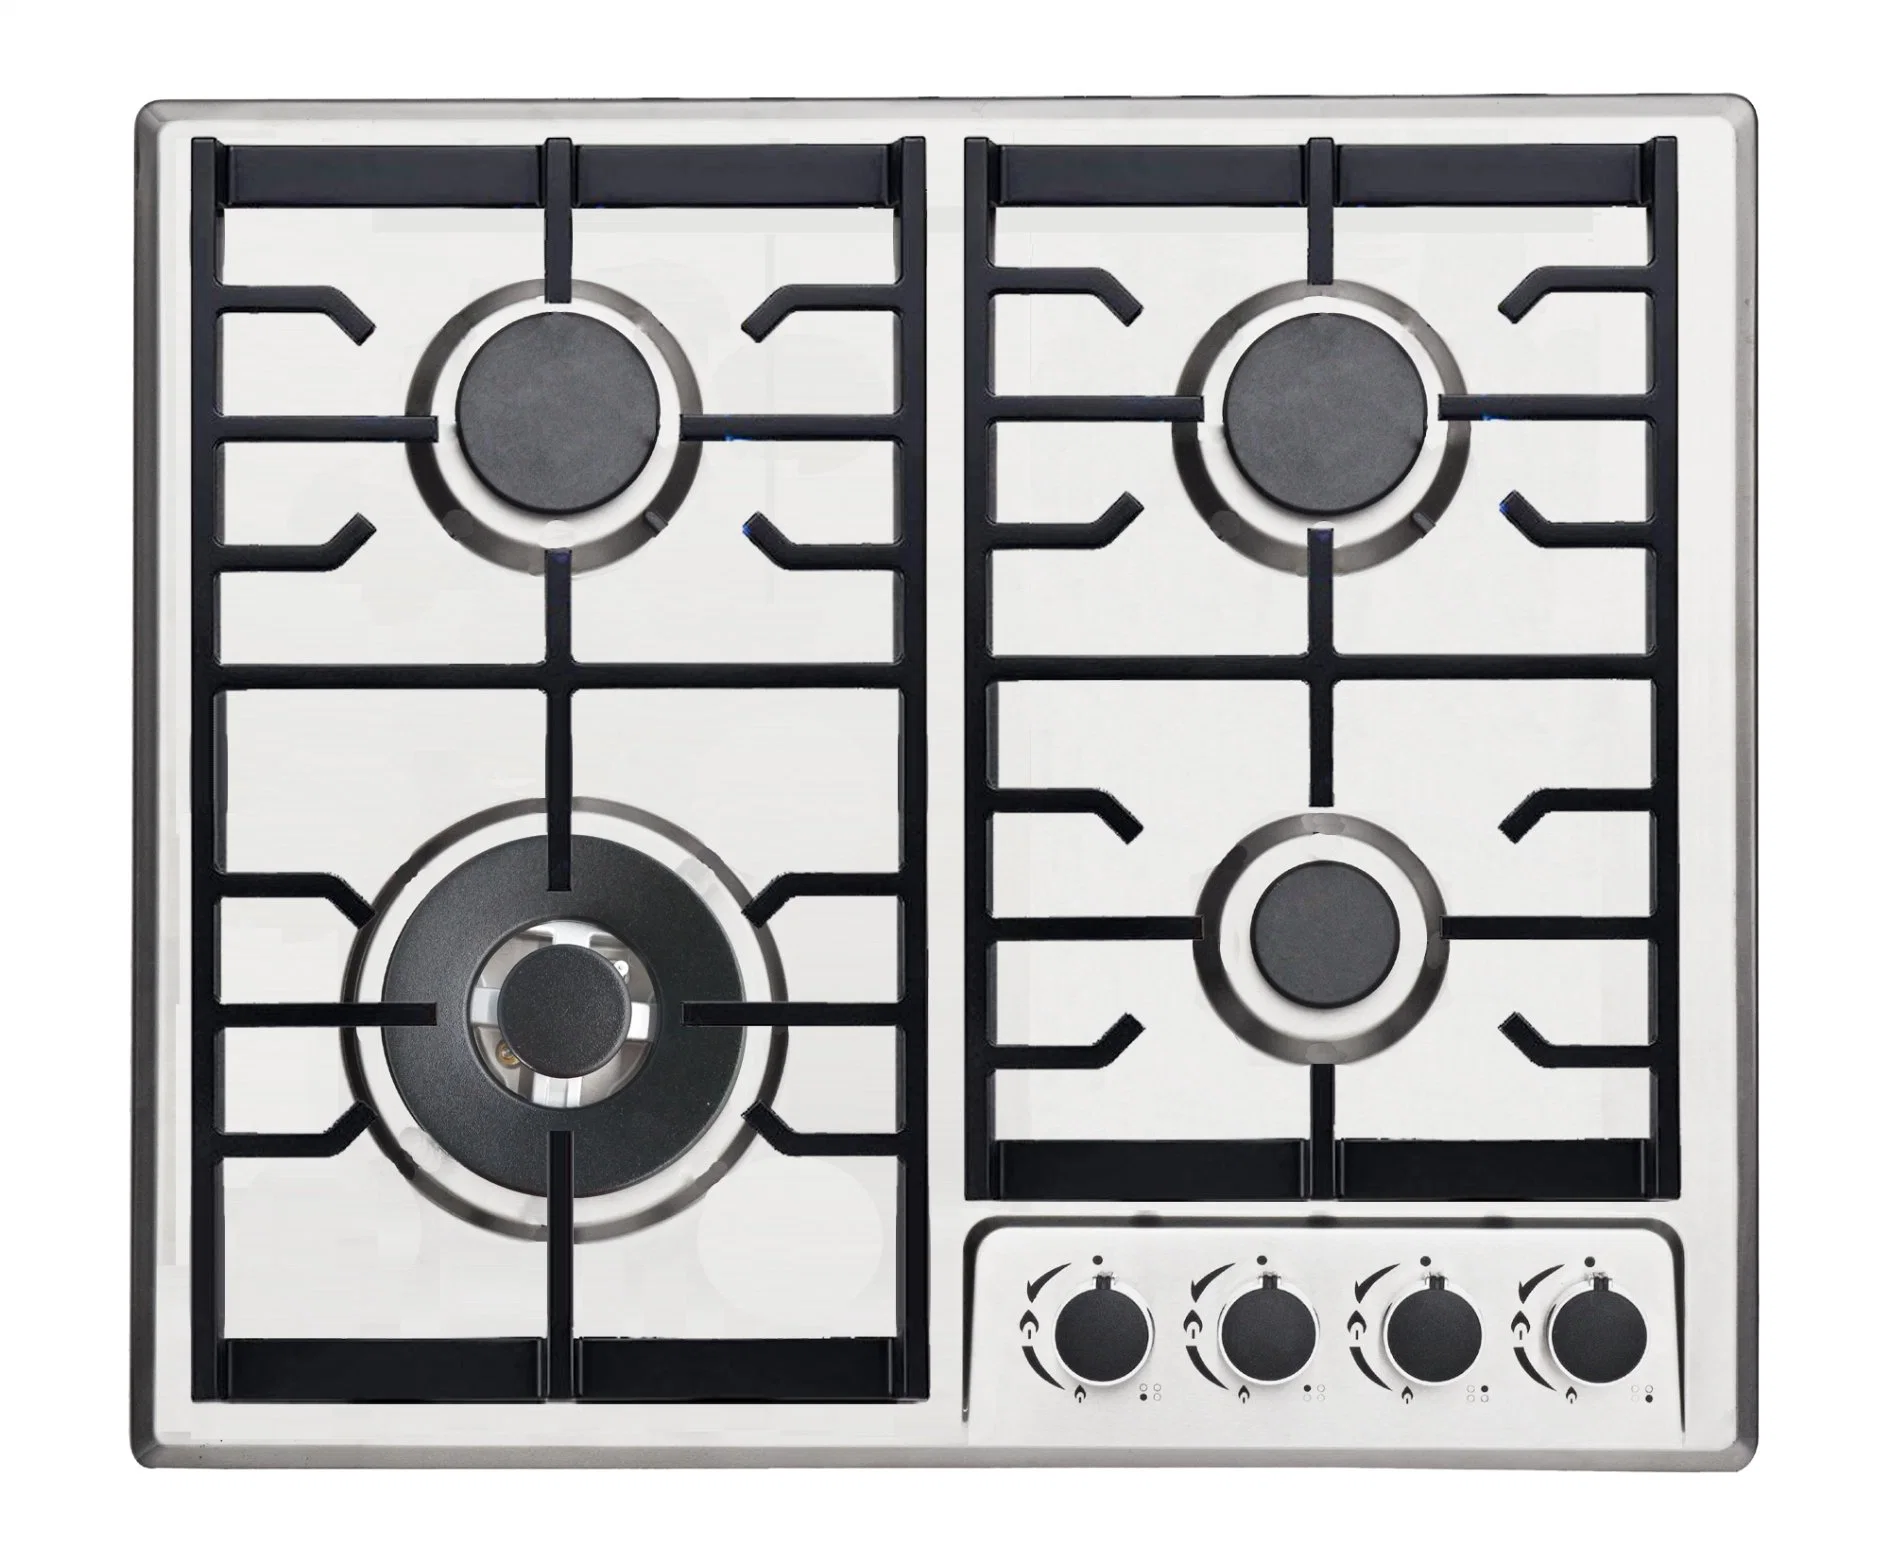 New Design Italy Sabaf Burner 4 Burners Home Kitchen Gas Stove (JZS54034-DCC)